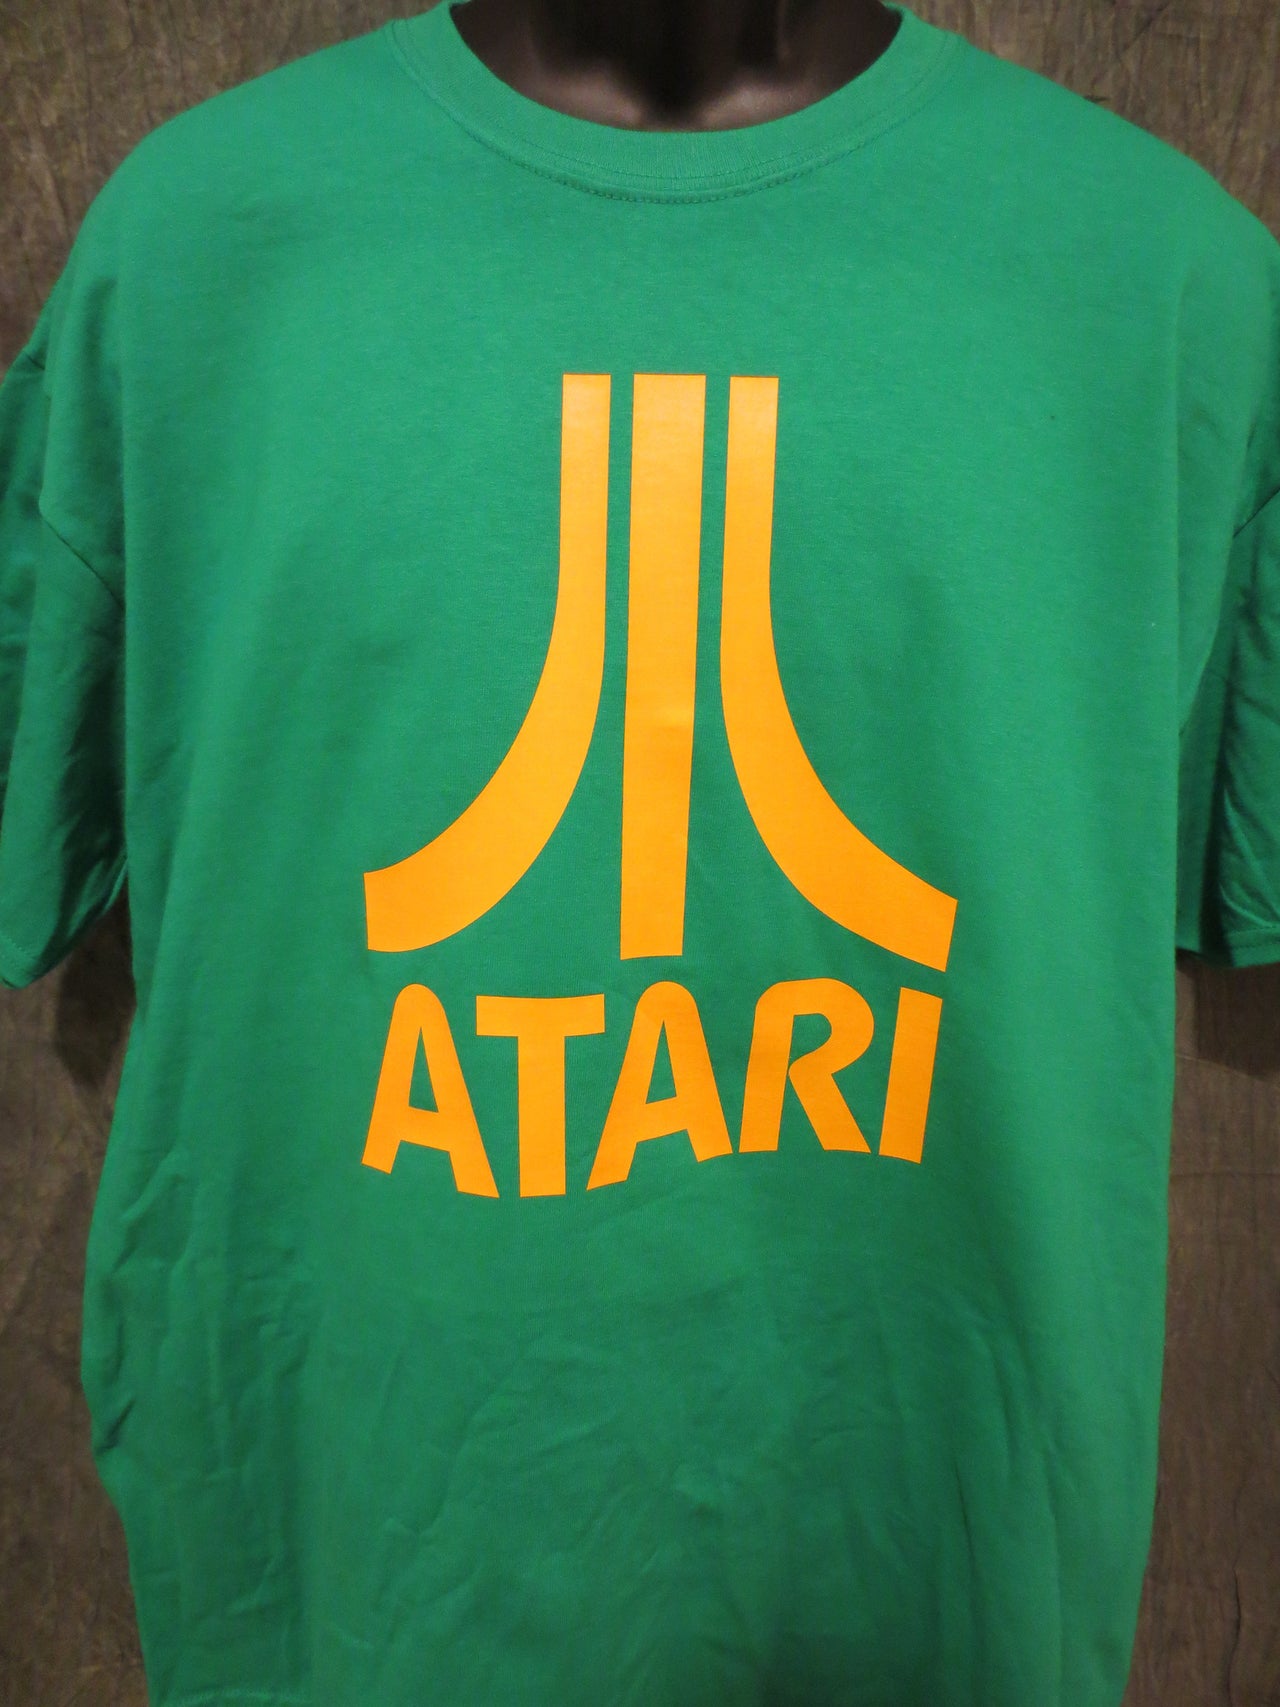 Atari Logo Tshirt: Green With Yellow Print - TshirtNow.net - 4